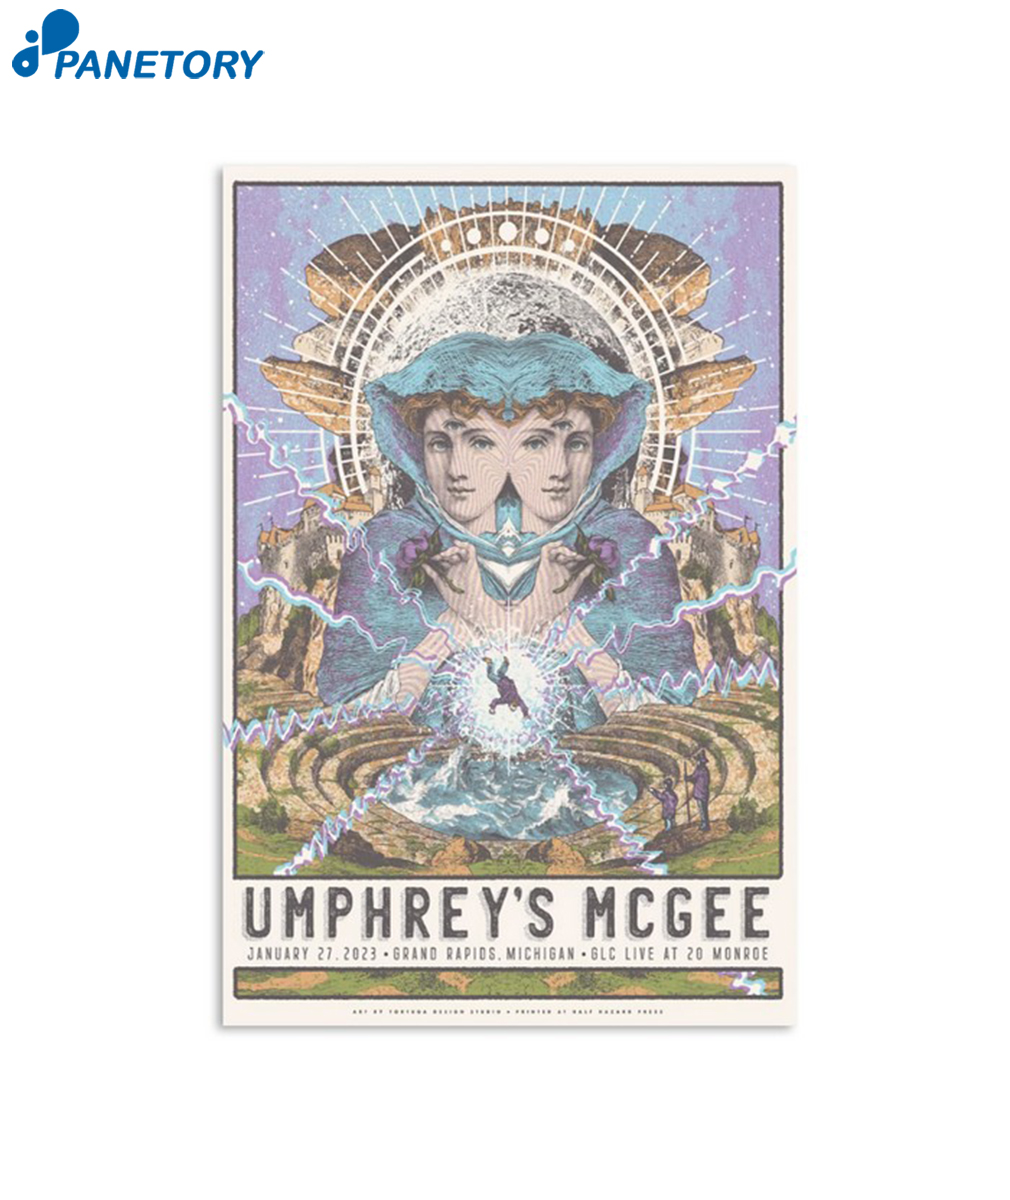 Umphreys Mcgee Grand Rapids Michigan January 27Th 2023 Poster